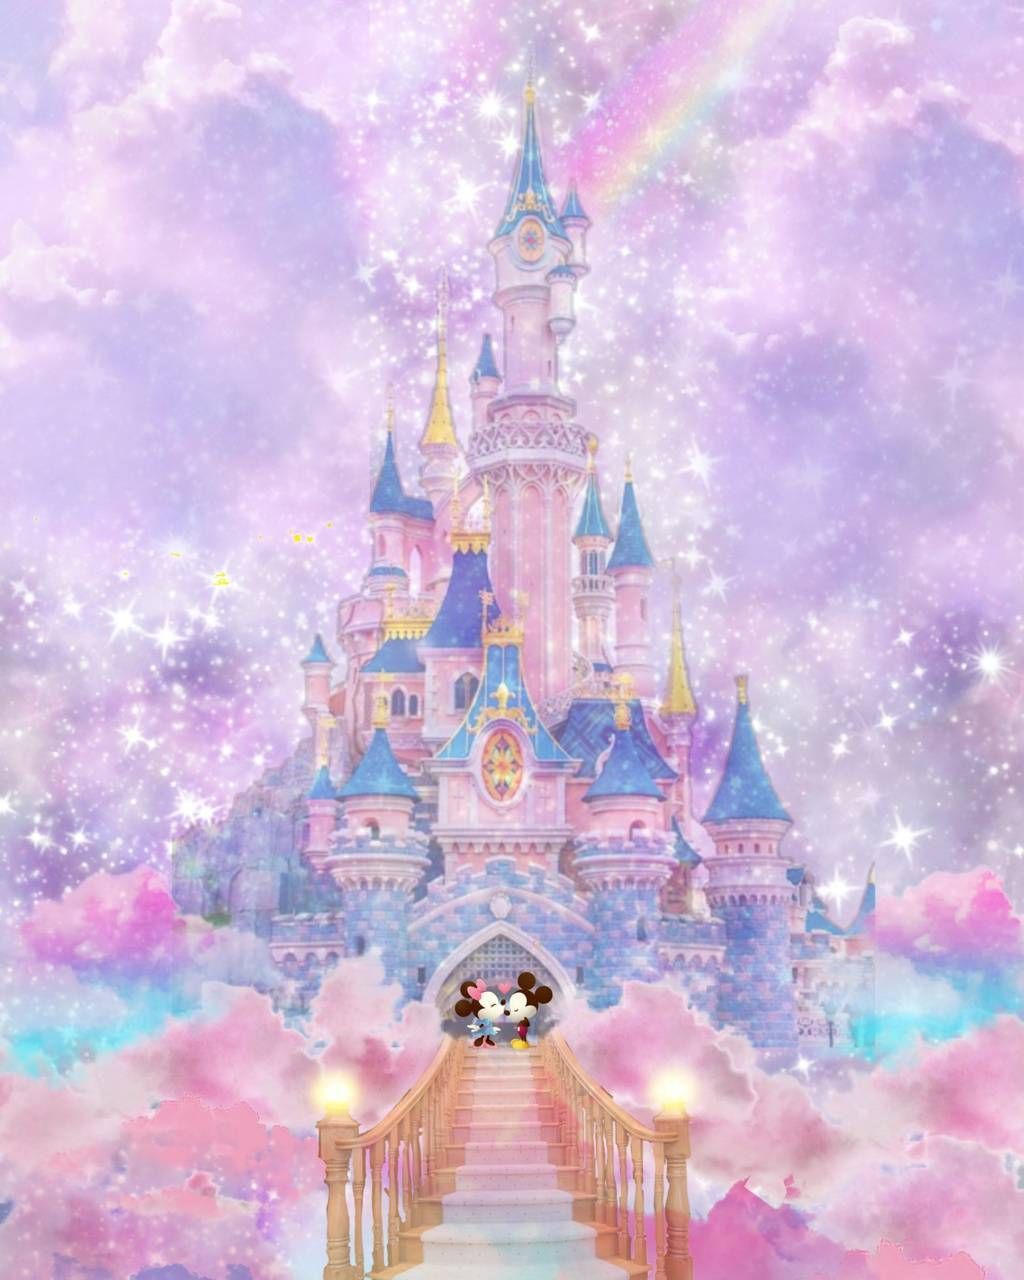 Download Disney castle wallpaper by DisneyClarke now. Browse millions of. Disney wallpaper, Disney princess wallpaper, Disney castle drawing